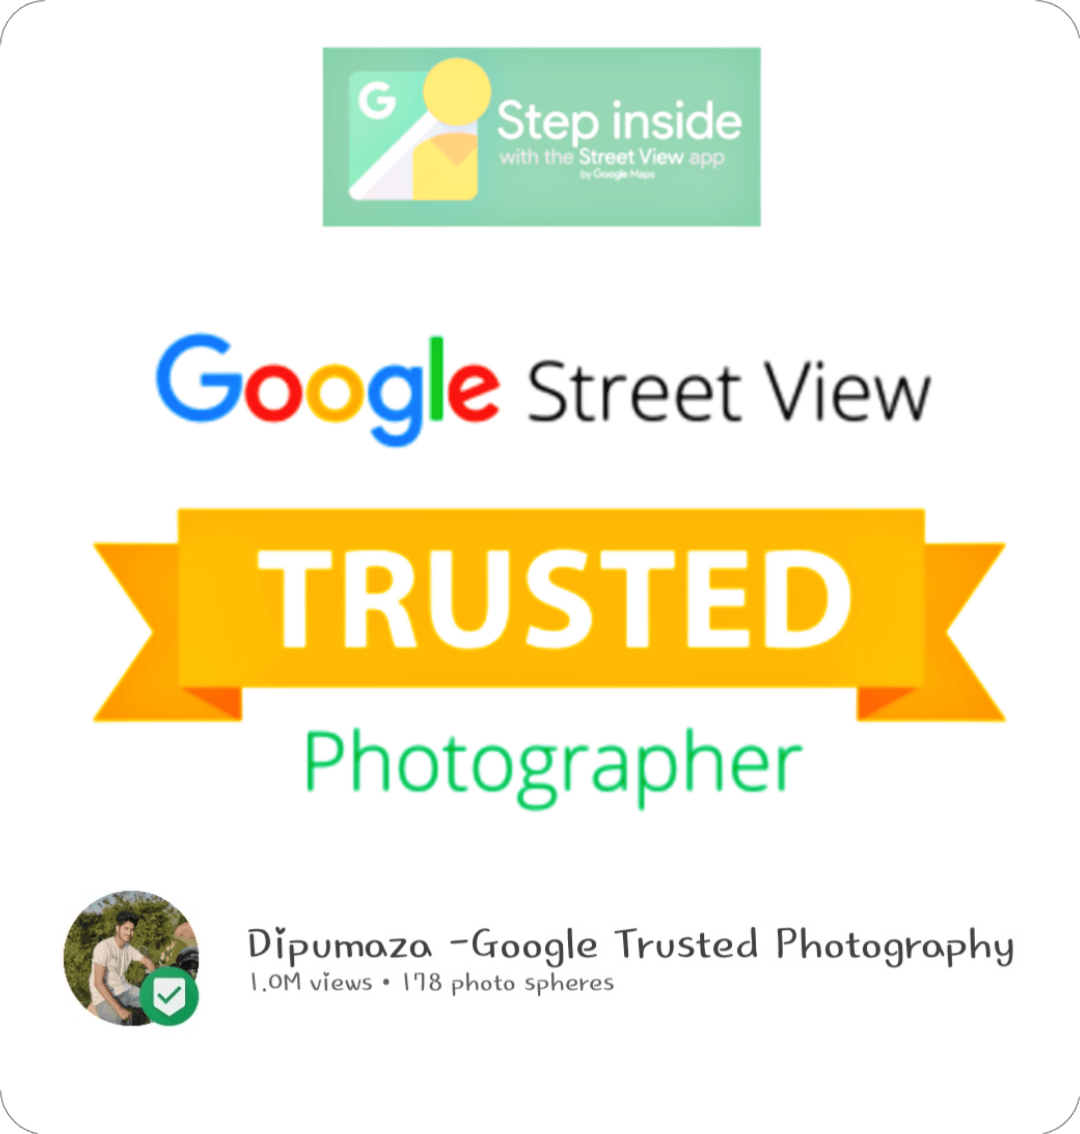 Dipumaza -Google Trusted Photography